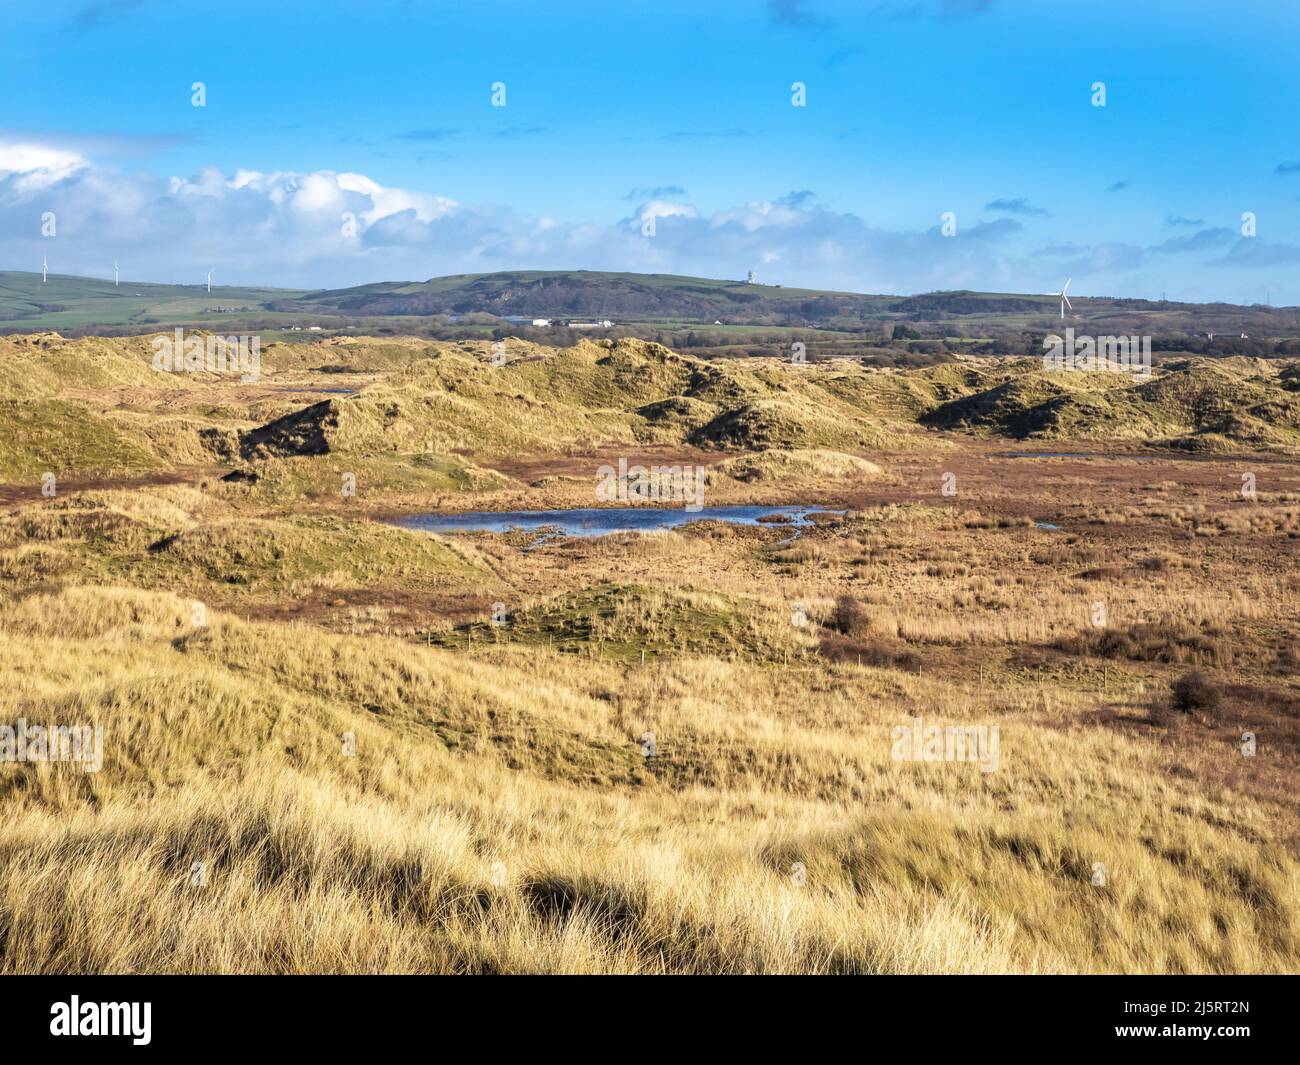 Sandscale Hawes bei Roanhead an der Küste von Cumbria bei Barrow in Furness ist ein seltenes Habitat für Sanddünen. Stockfoto